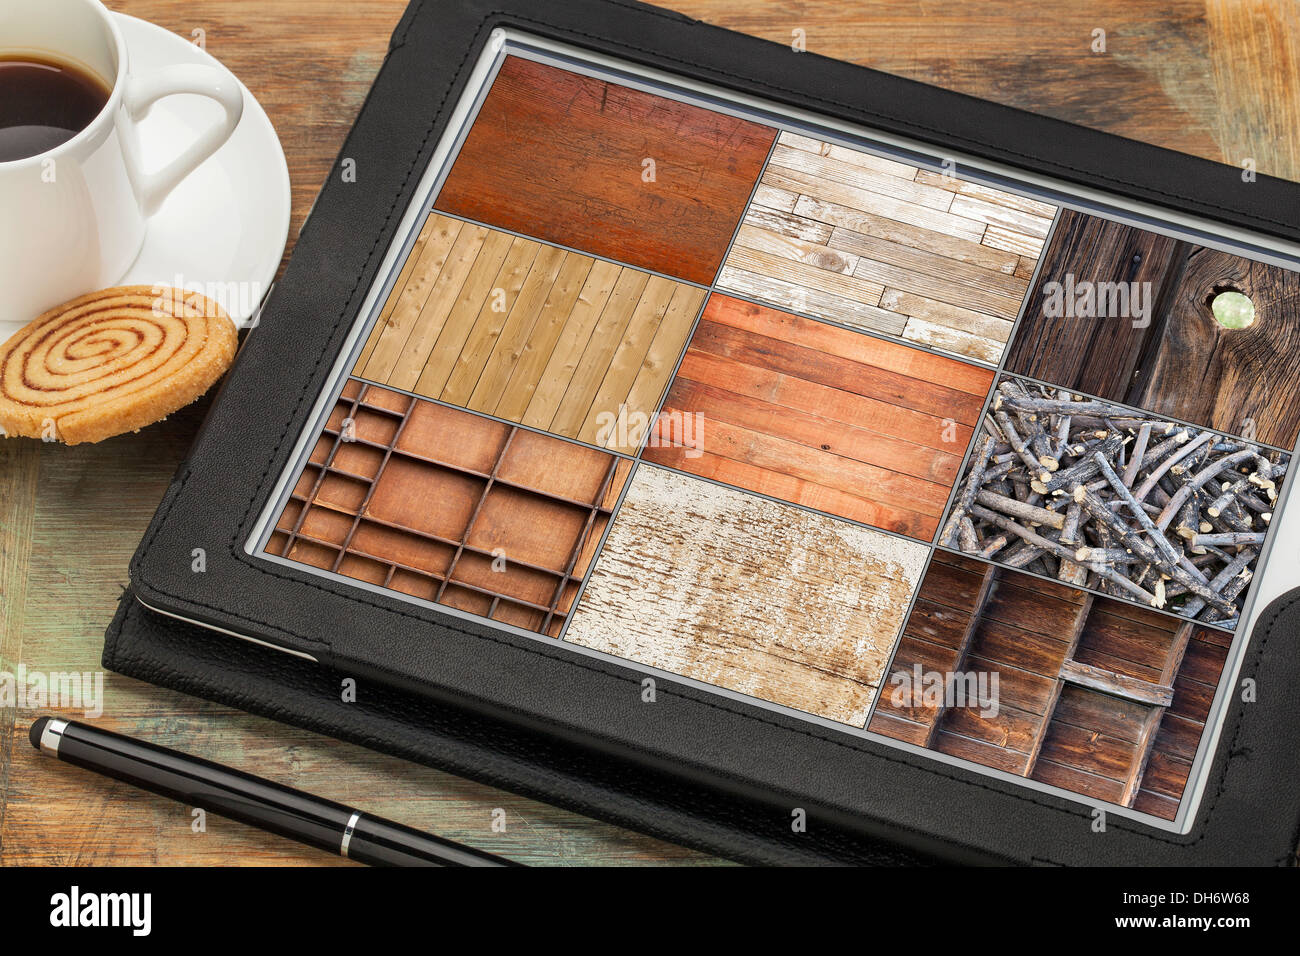 L'examen des images de texture bois sur un ordinateur tablette numérique avec stylet, tasse de café et des cookies Banque D'Images